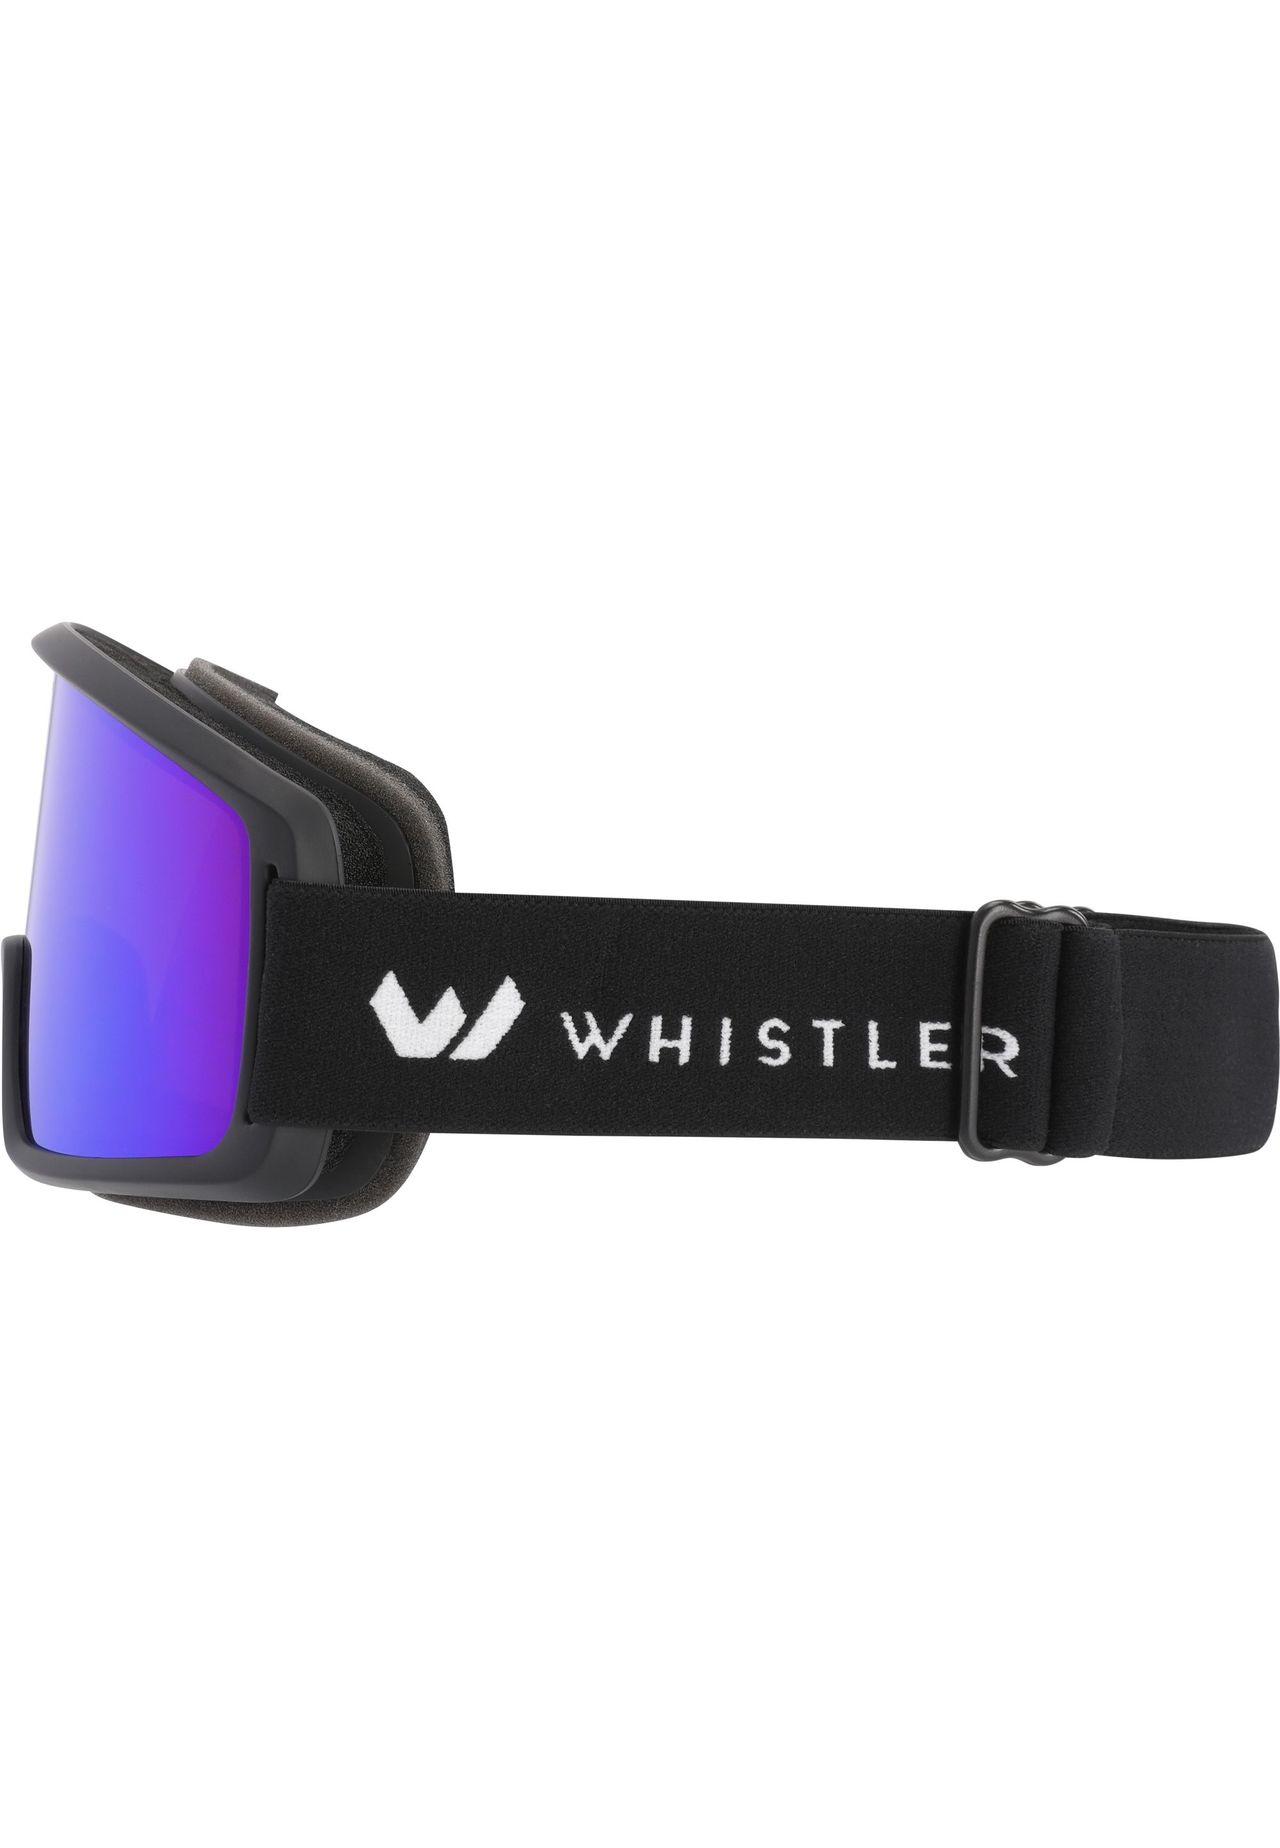 WHISTLER Skibrille mit GALERIA | WS5150 Anti-Beschlag-Funktion praktischer OTG